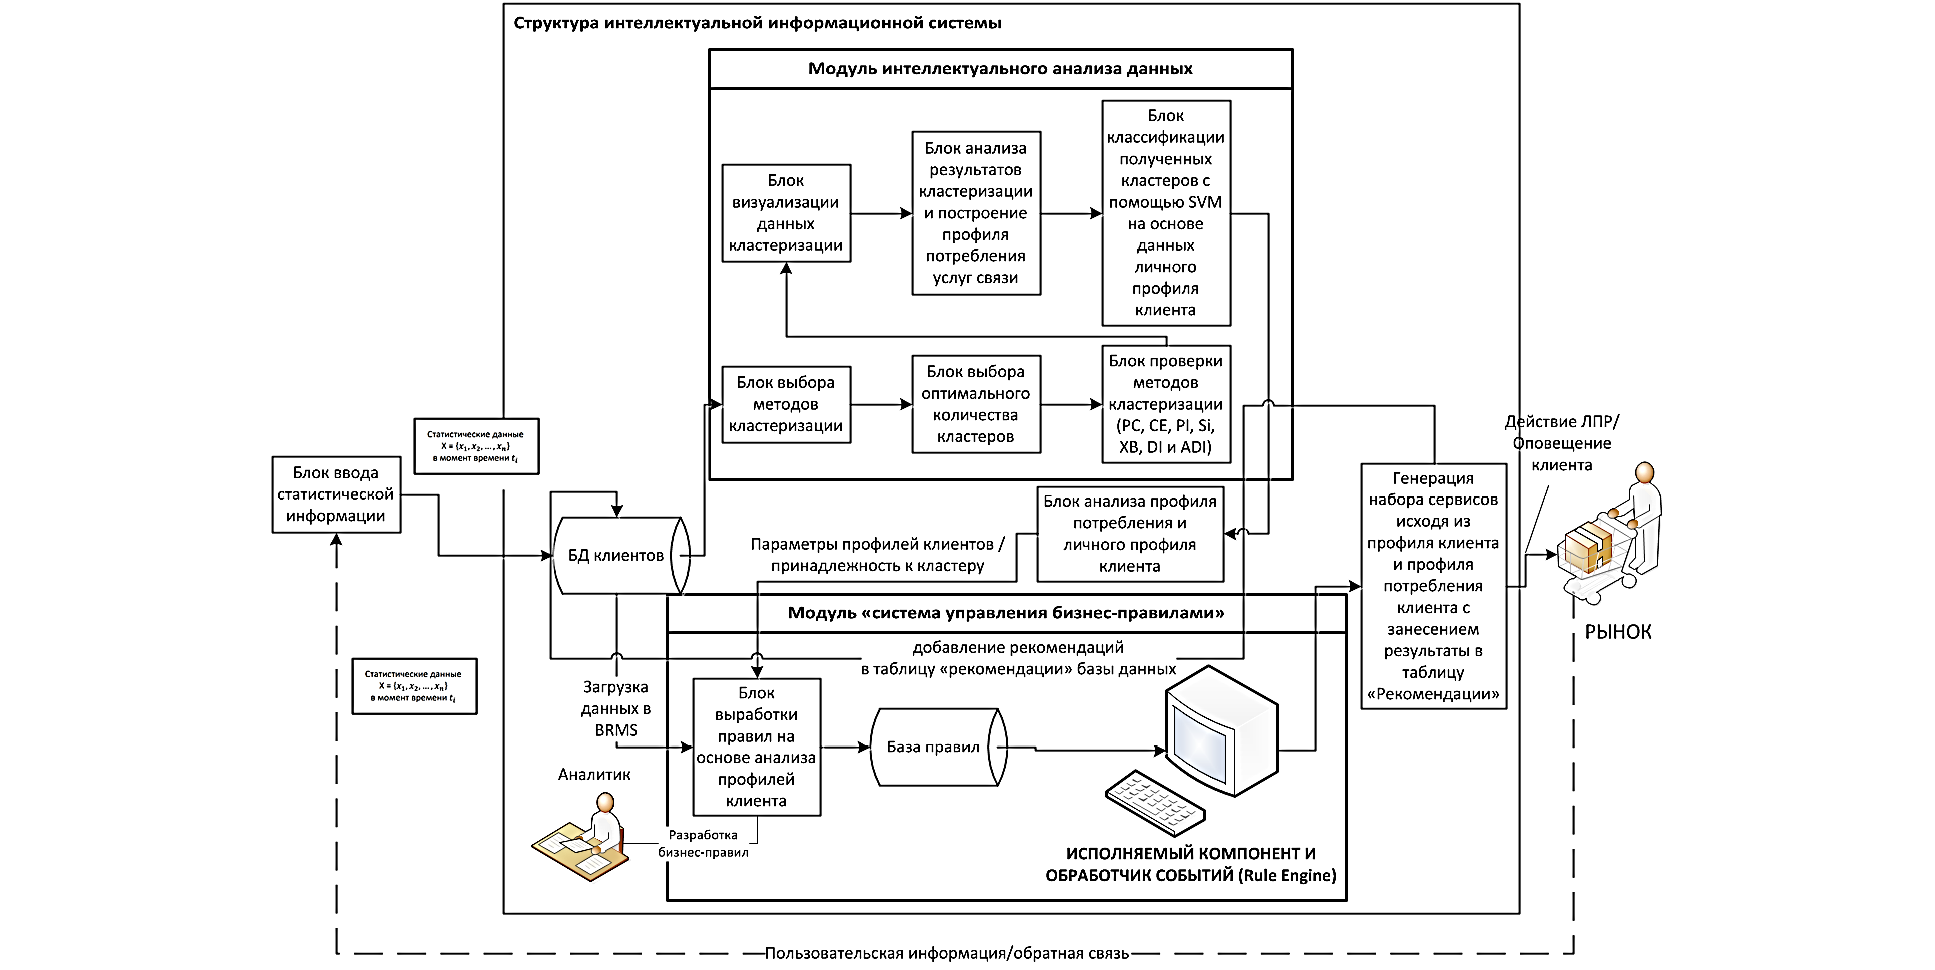 Рисунок 1. Структурная схема ИИСППР с модулями Data Mining и BRMS